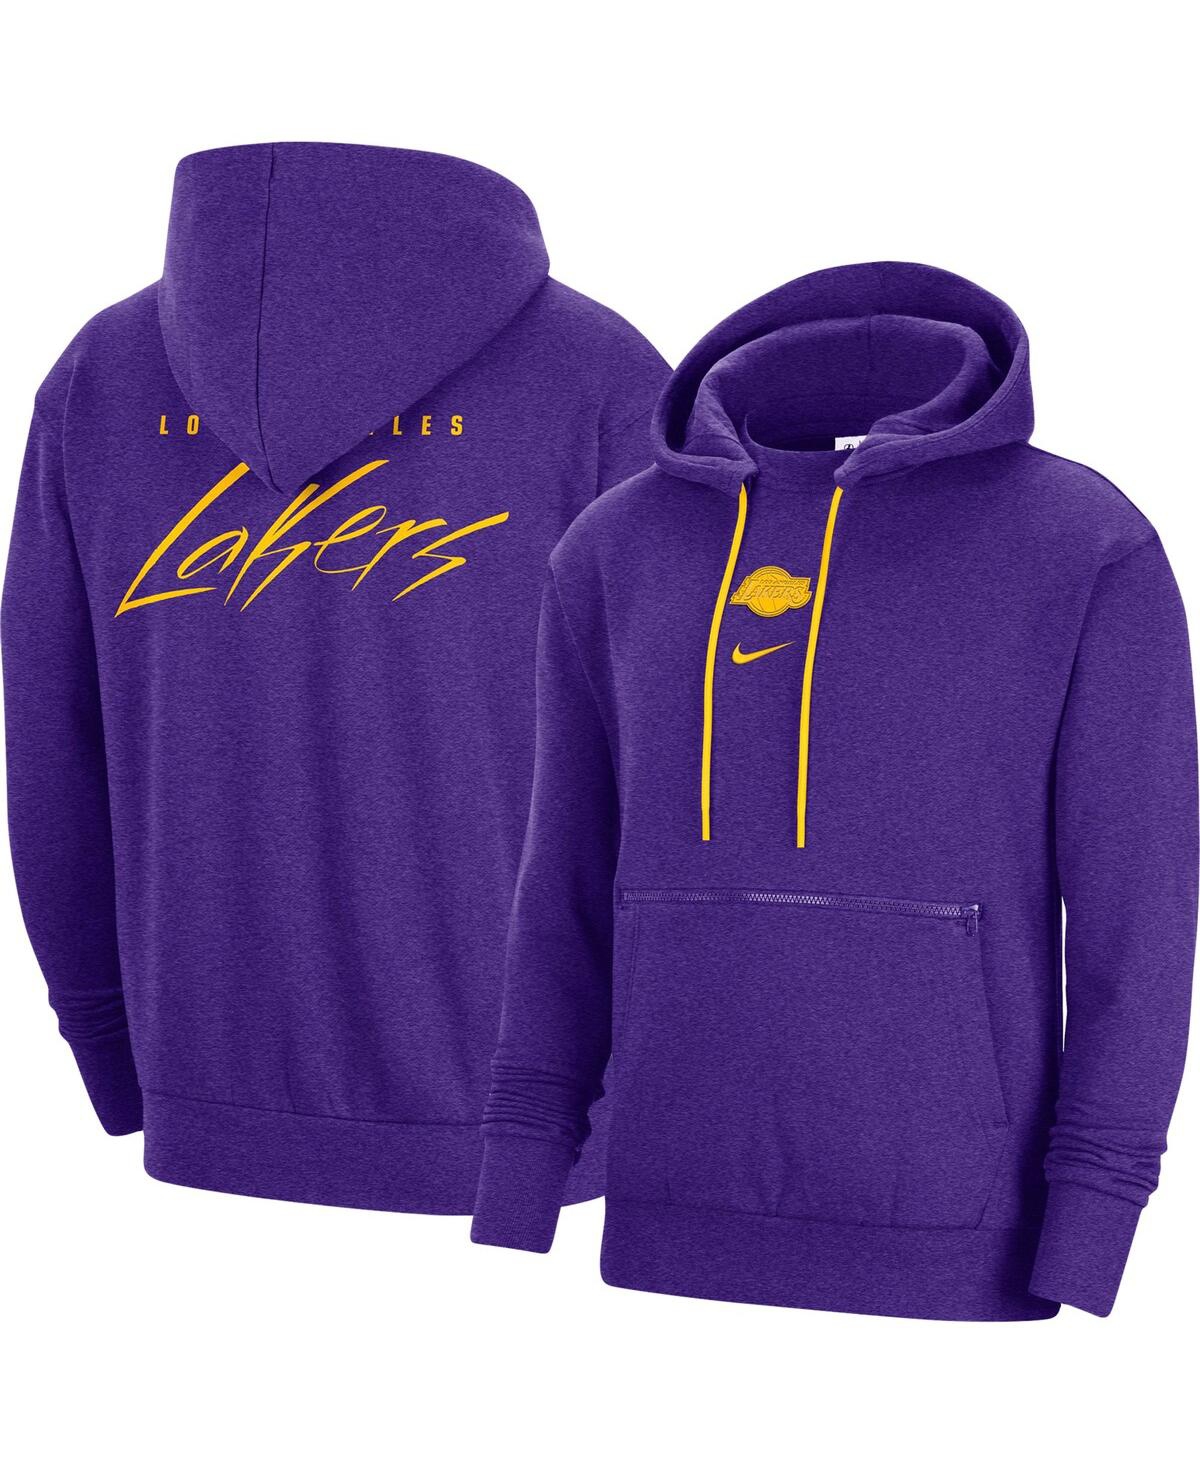 Shop Nike Men's  Heather Purple Los Angeles Lakers Courtside Versus Flight Pullover Hoodie